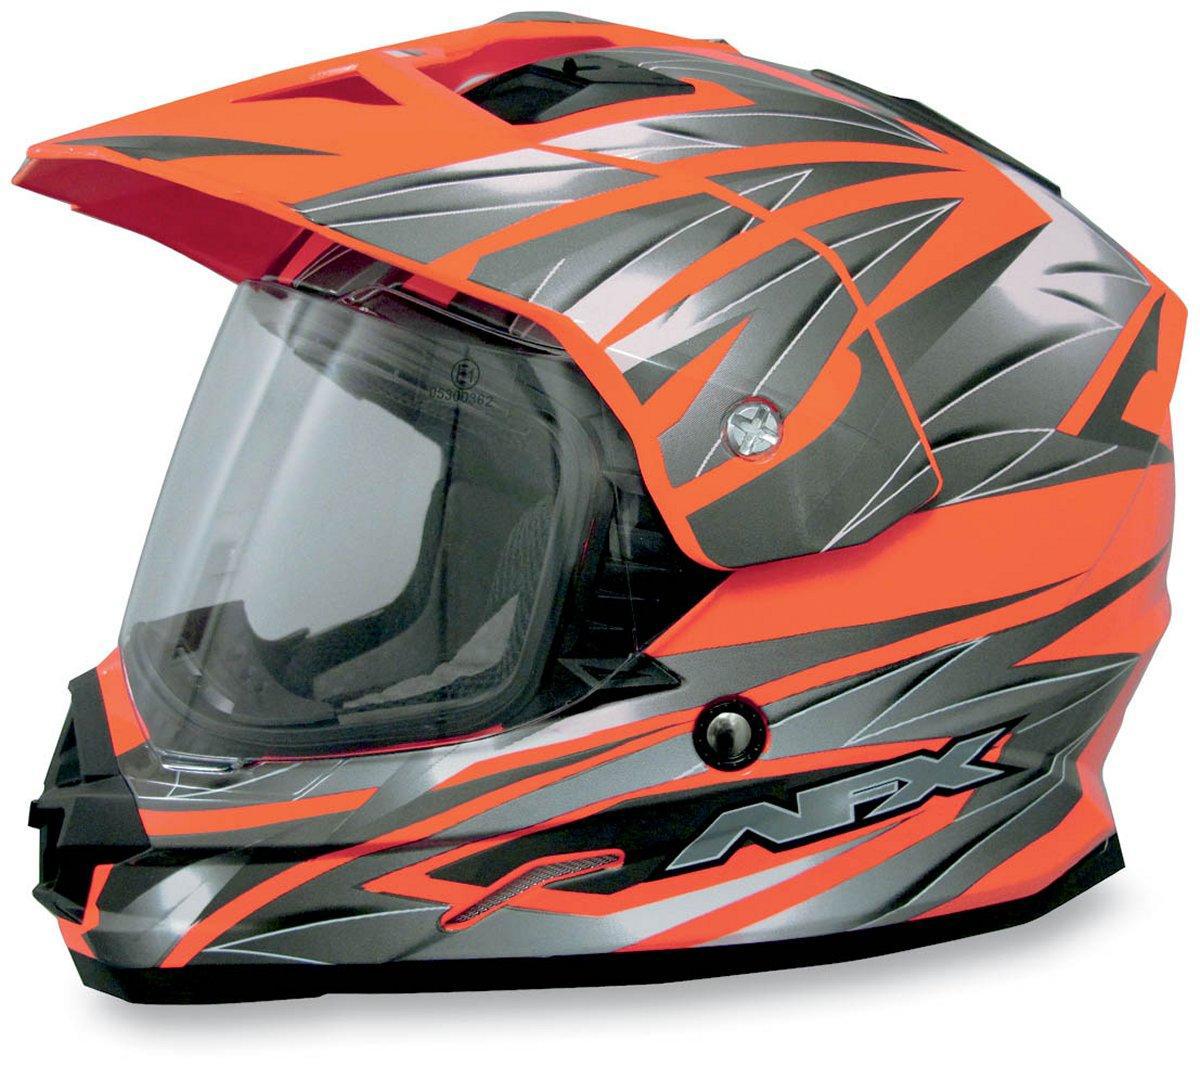 Afx fx-39 dual sport helmet multi safety orange